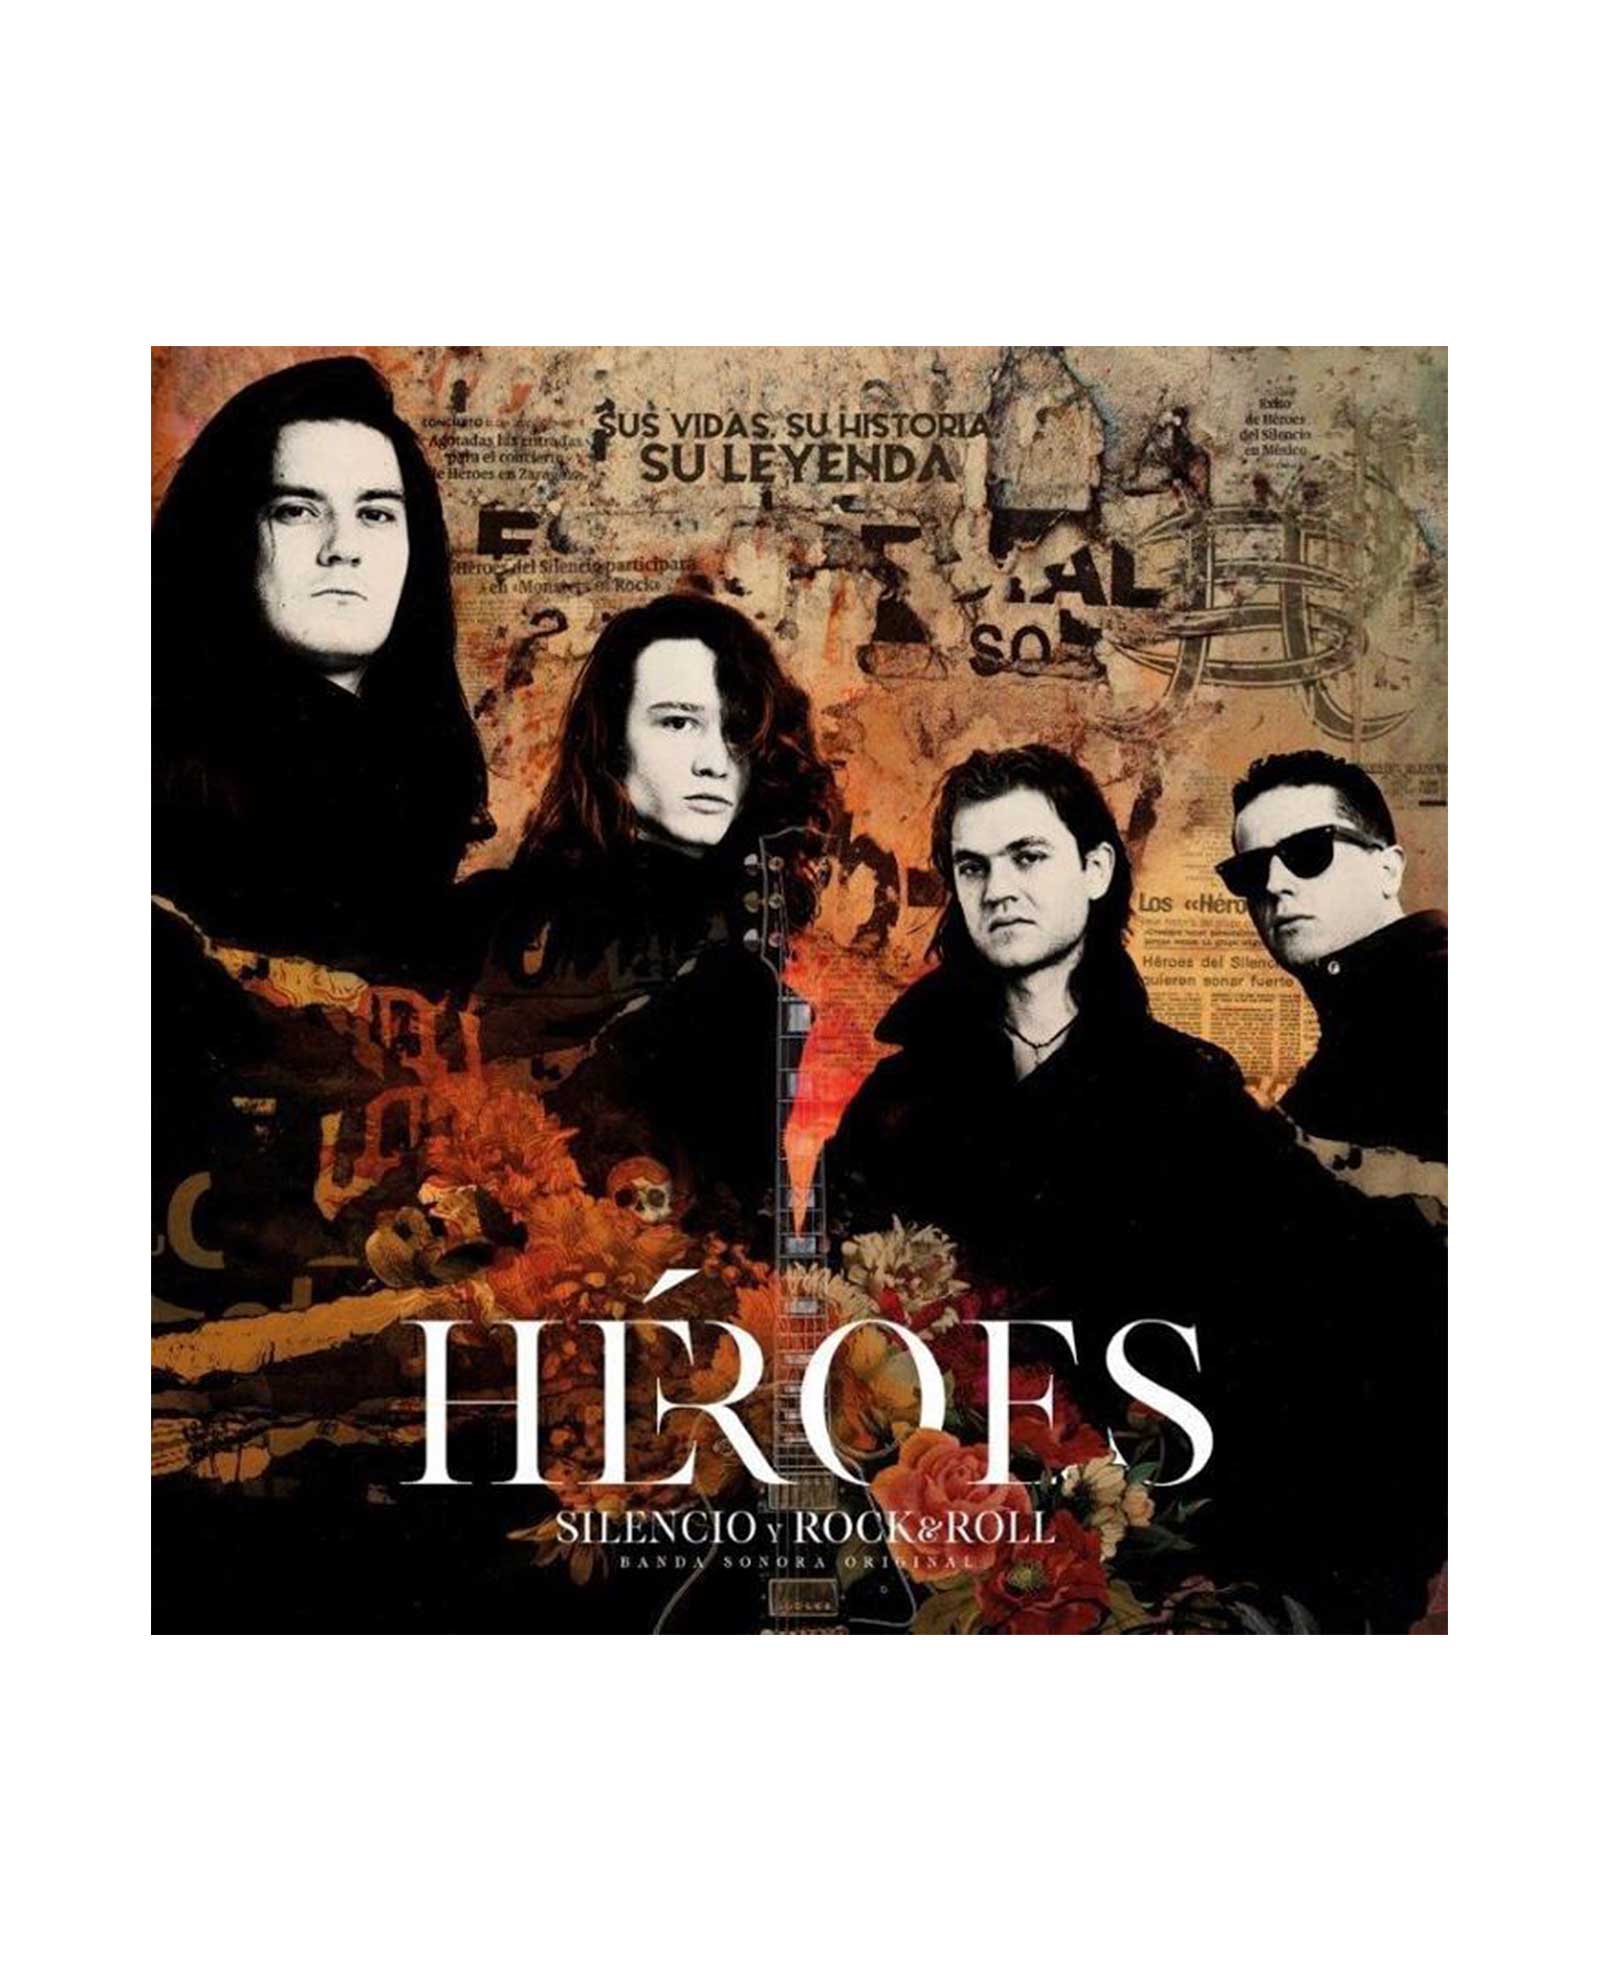 Héroes del Silencio - LP Vinilo +2CD Silencio y Rock & Roll